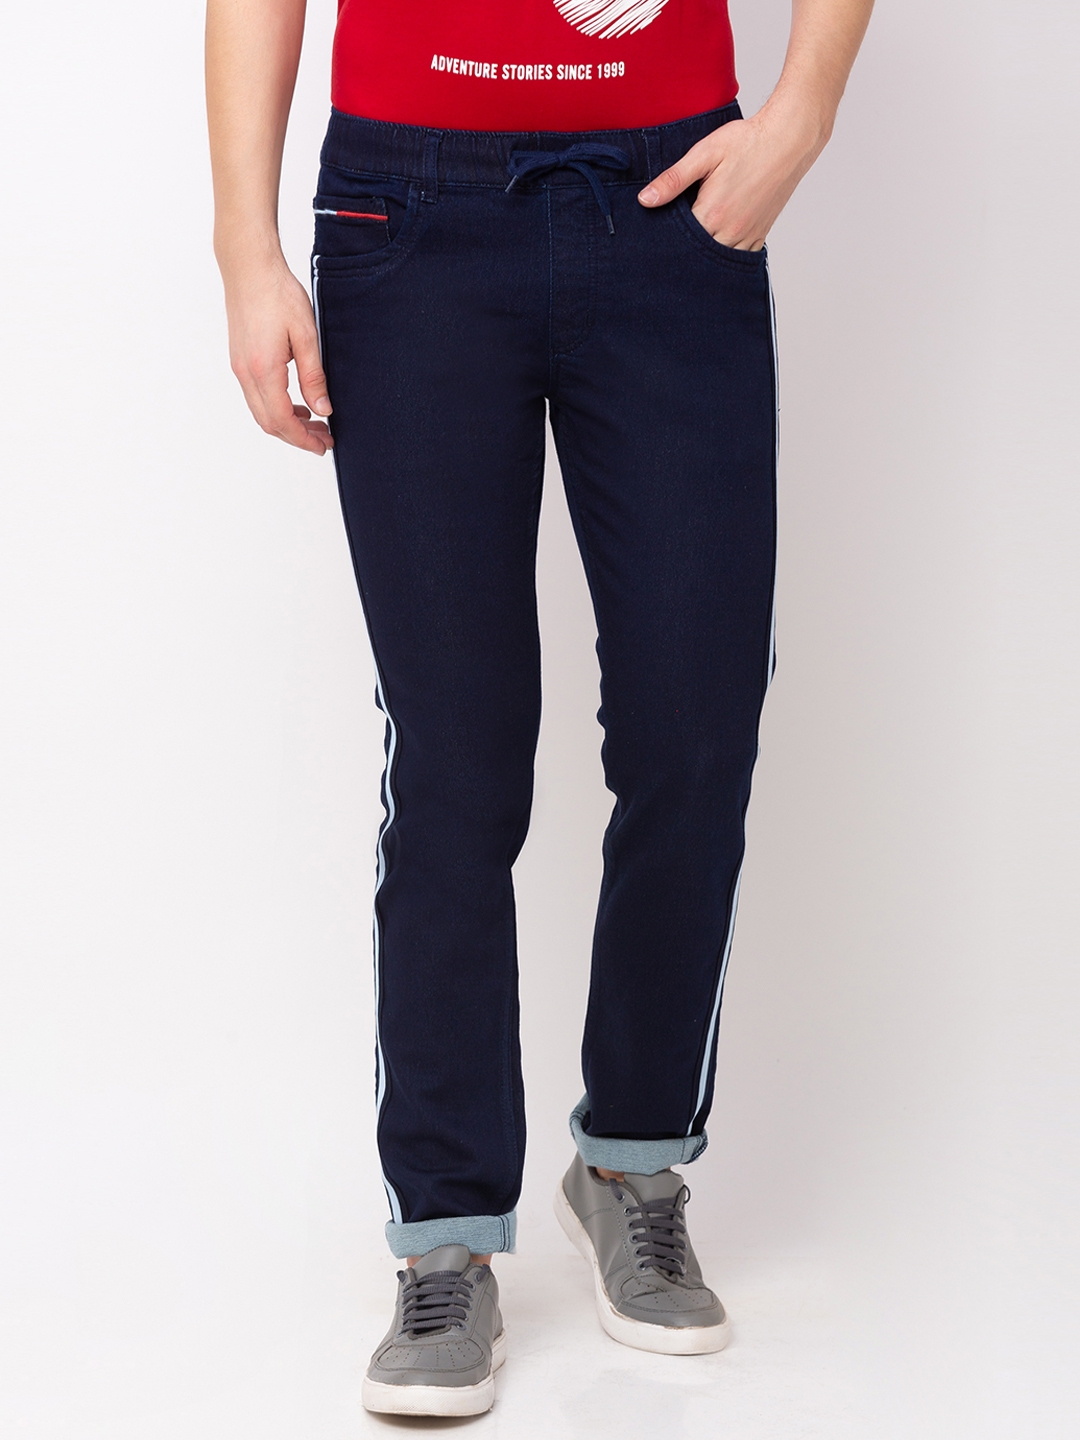 globus | Men's Blue Polycotton Striped Joggers Jeans 0